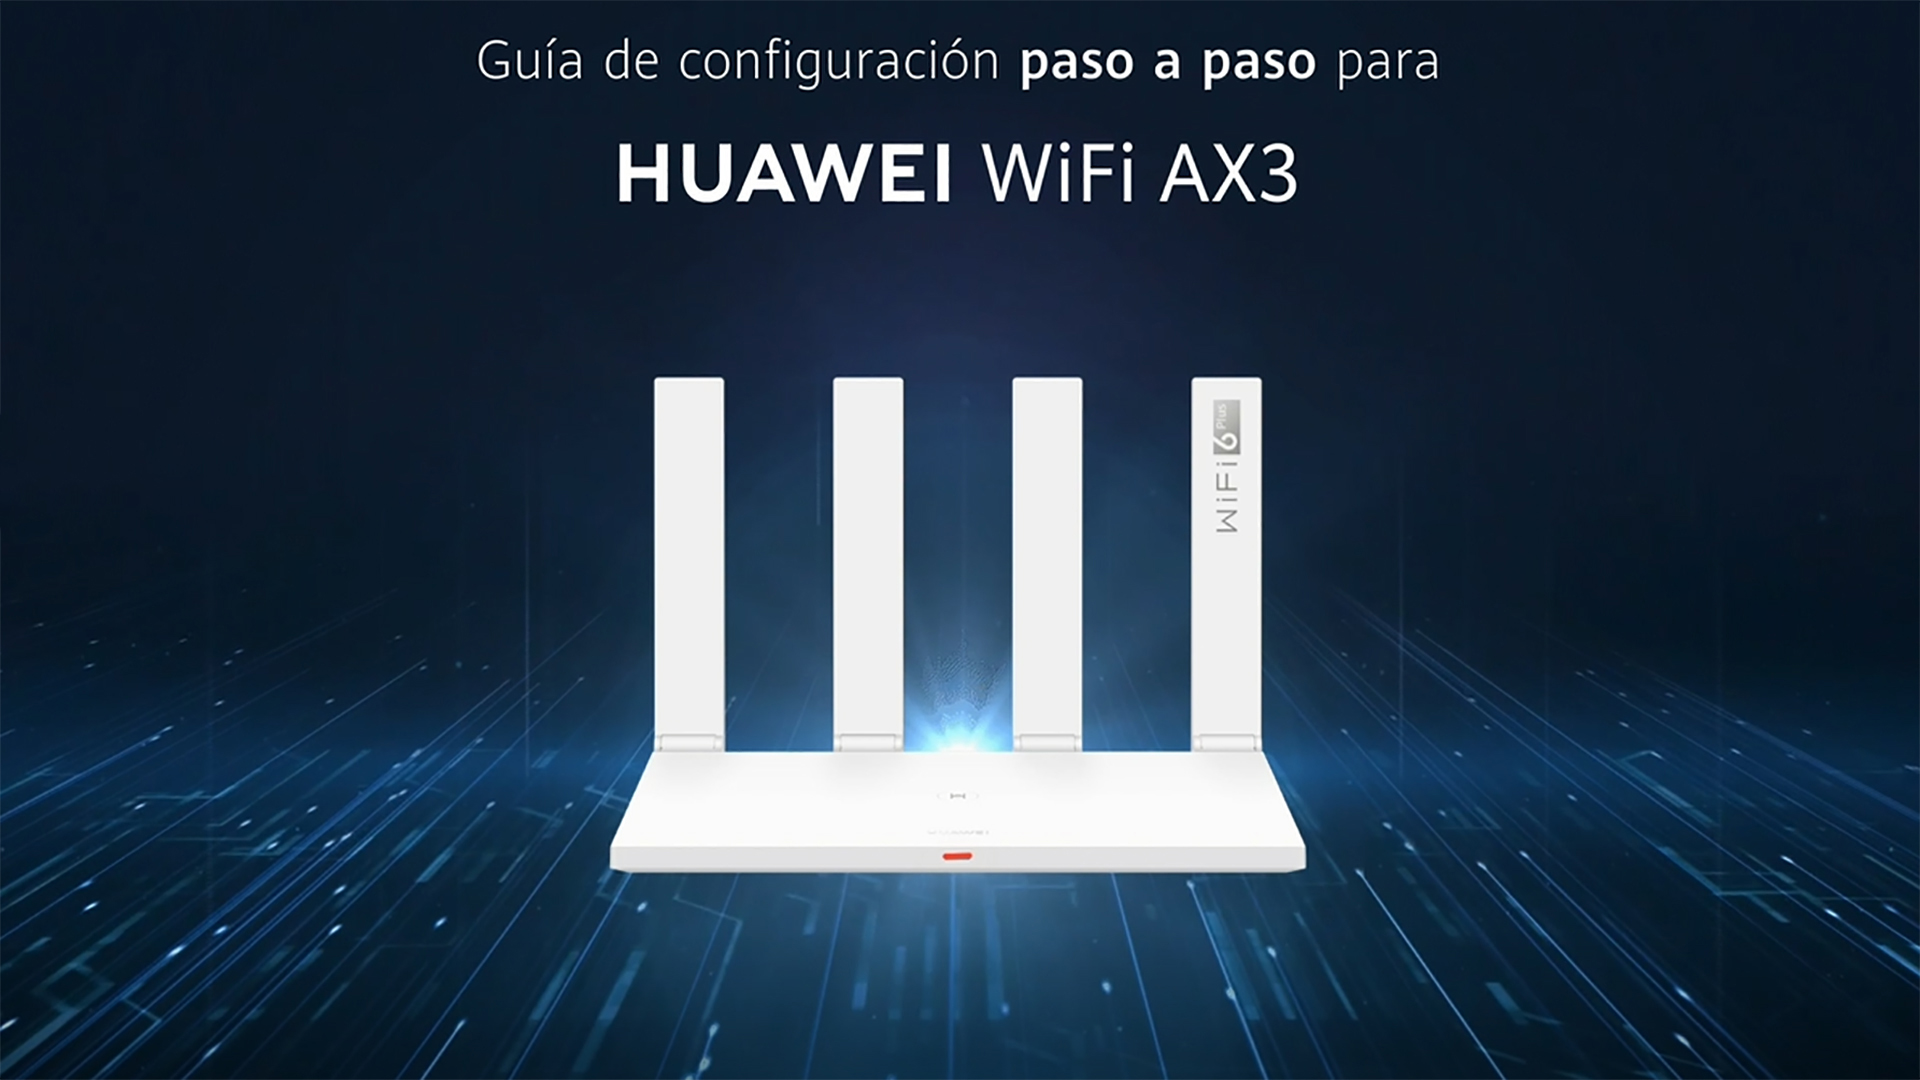 HUAWEI WiFi AX3 (Quad-core)